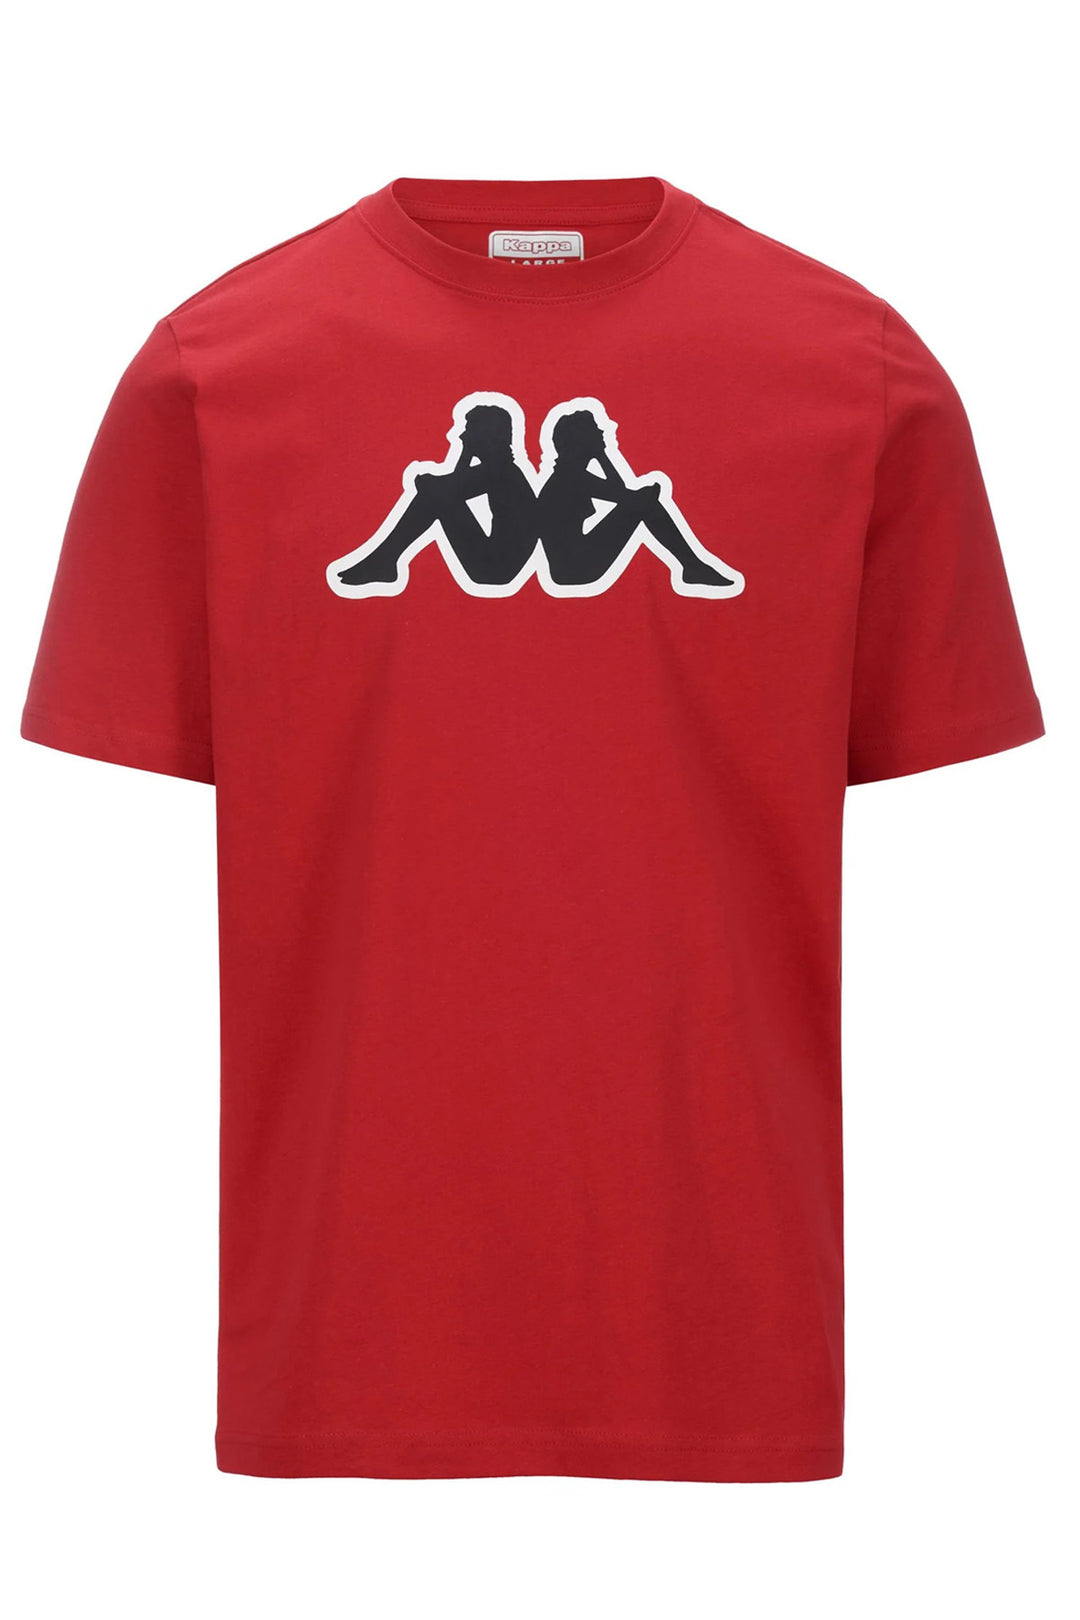 T-shirt Uomo Kappa Logo Zobi